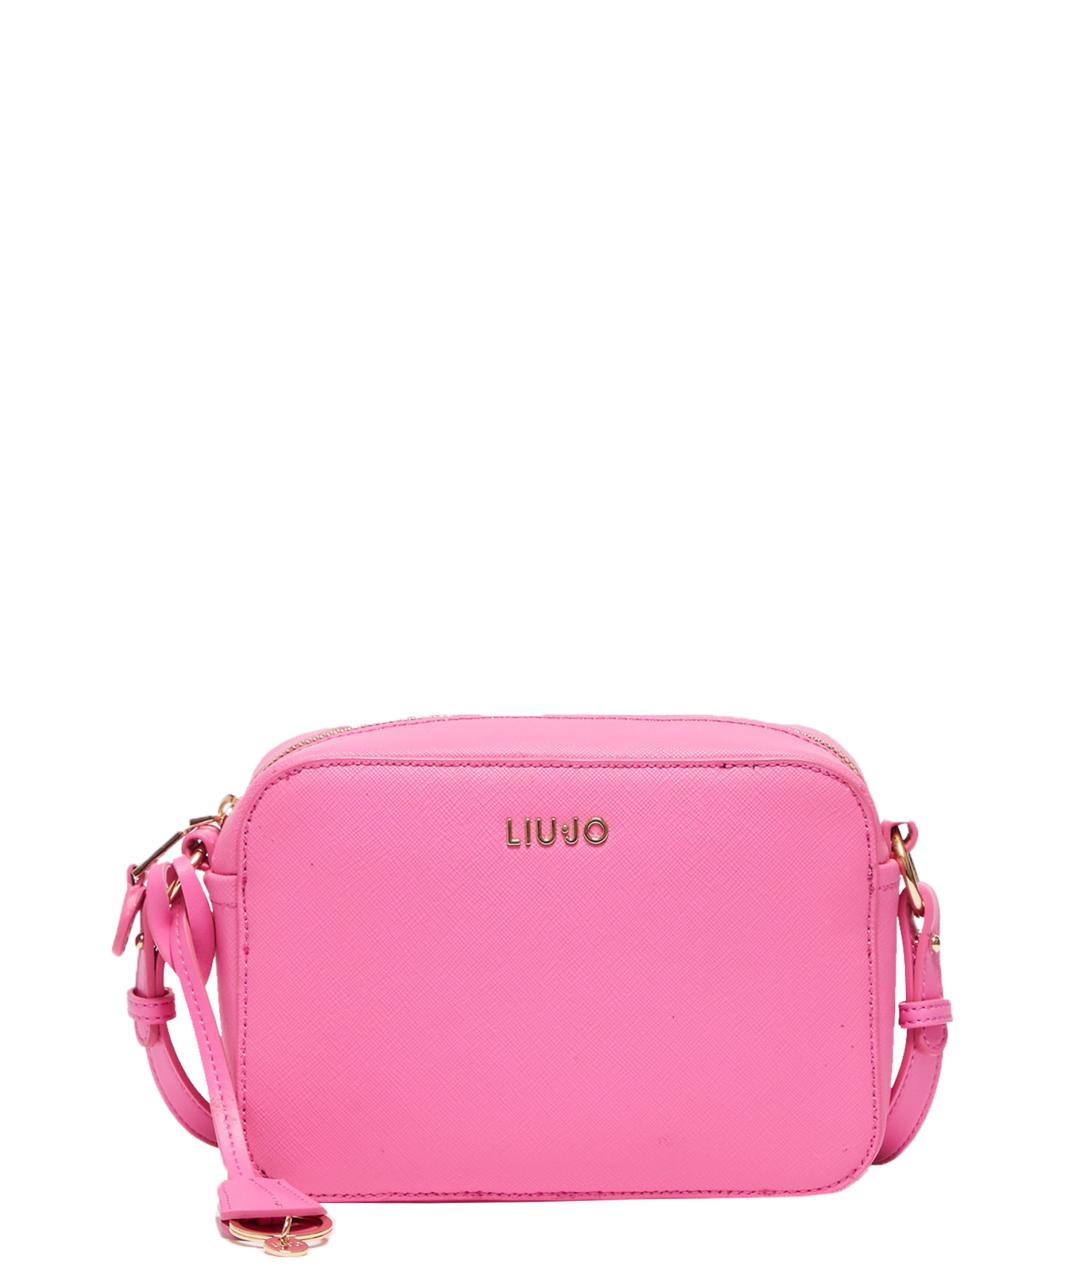 LIU JO Розовая сумка через плечо из искусственной кожи, фото 1